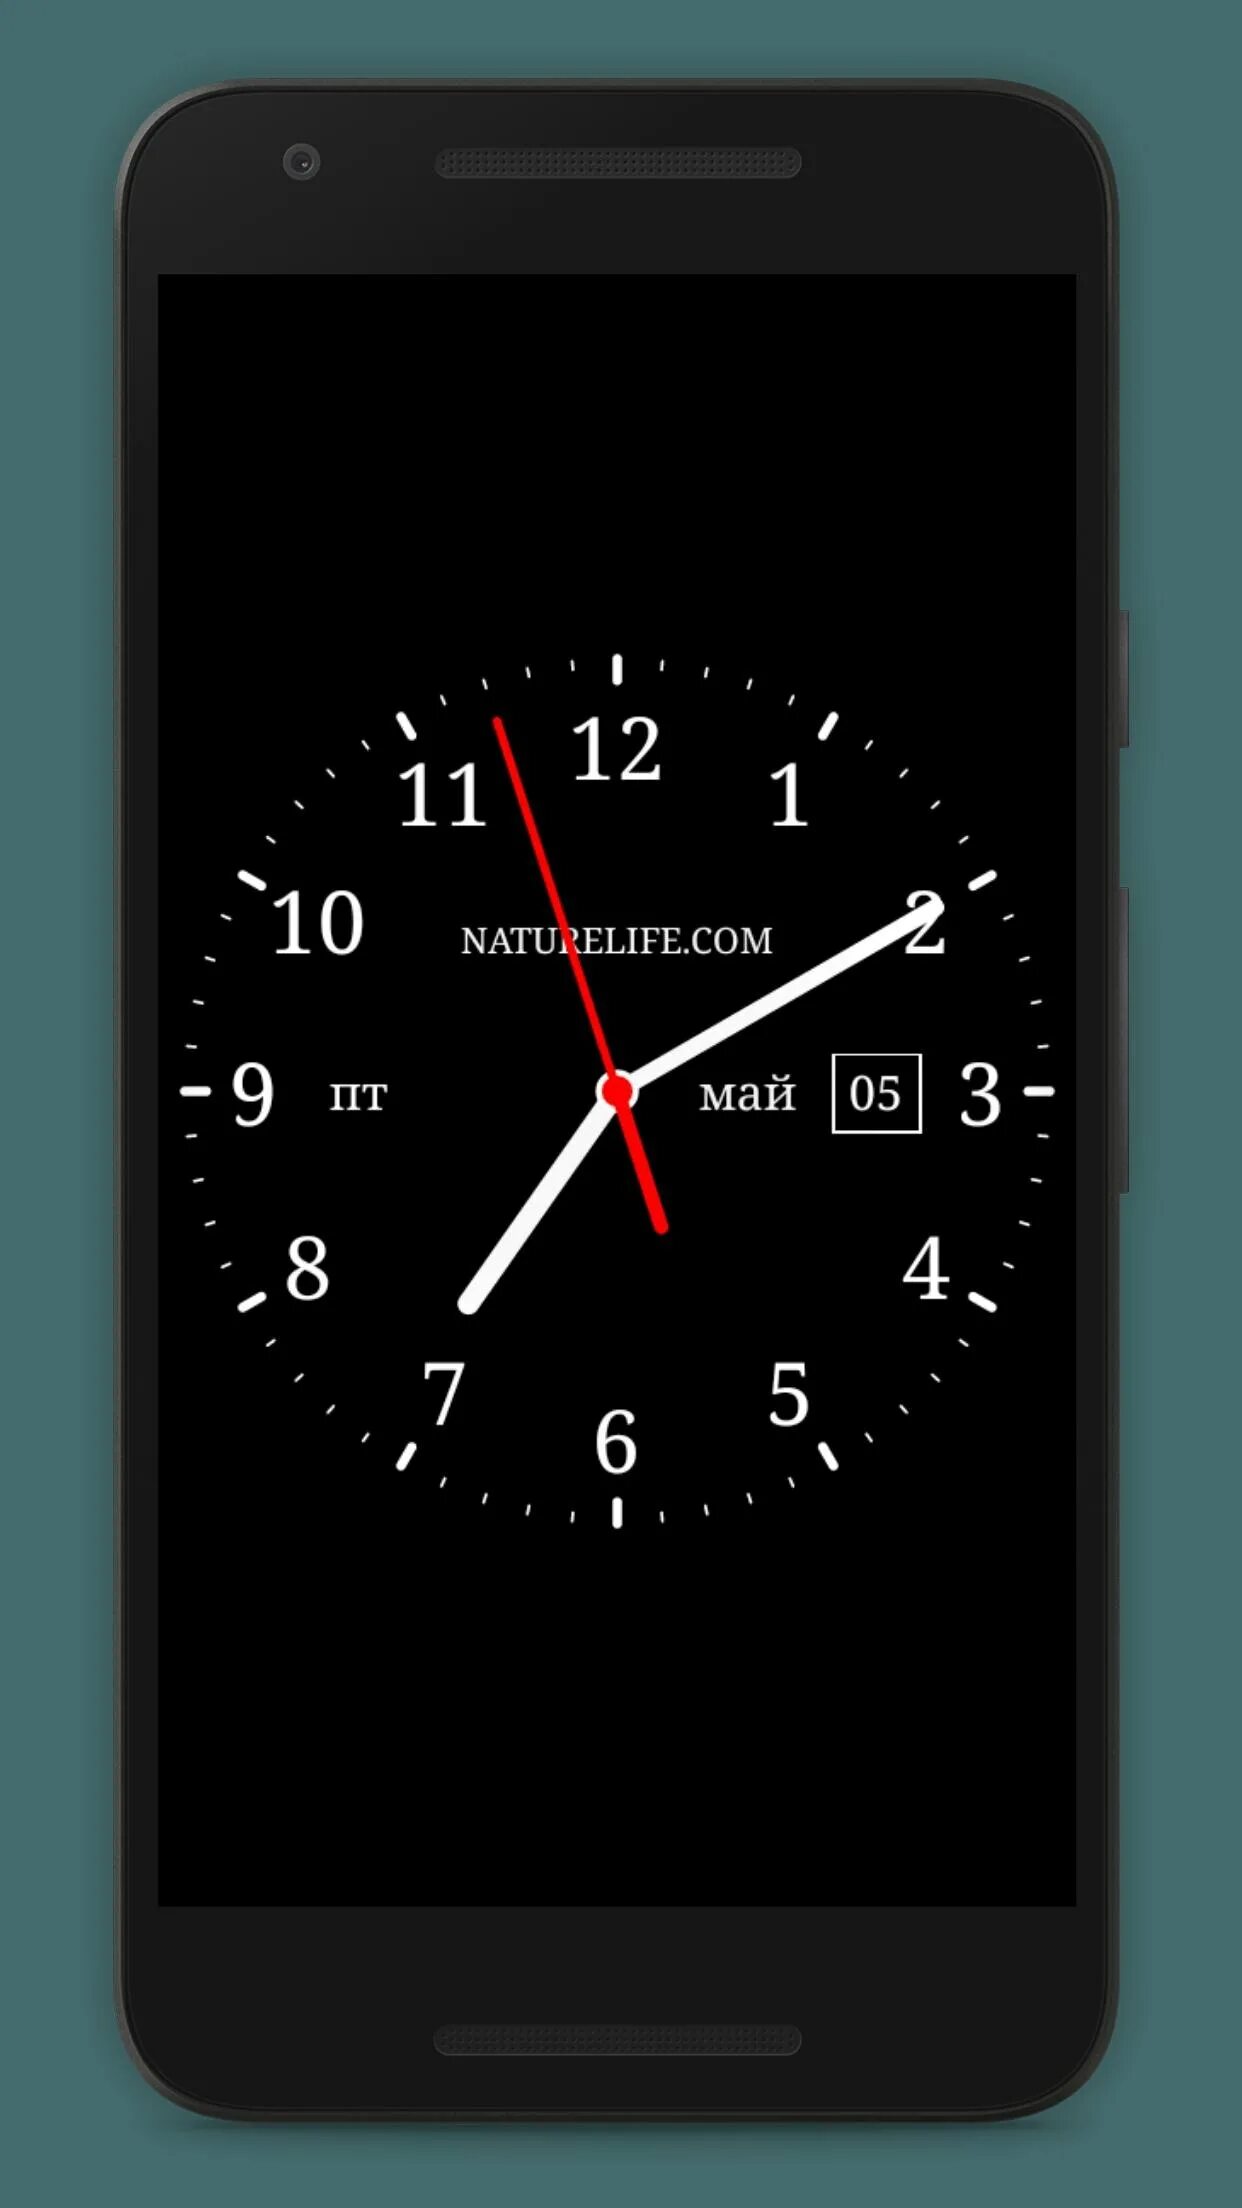 Большие часы на смартфон. Аналоговые часы для андроид 4.2.2. Аналоговые часы для андроид Samsung a 260. Аналоговые часы для андроид. Часы на экран смартфона.